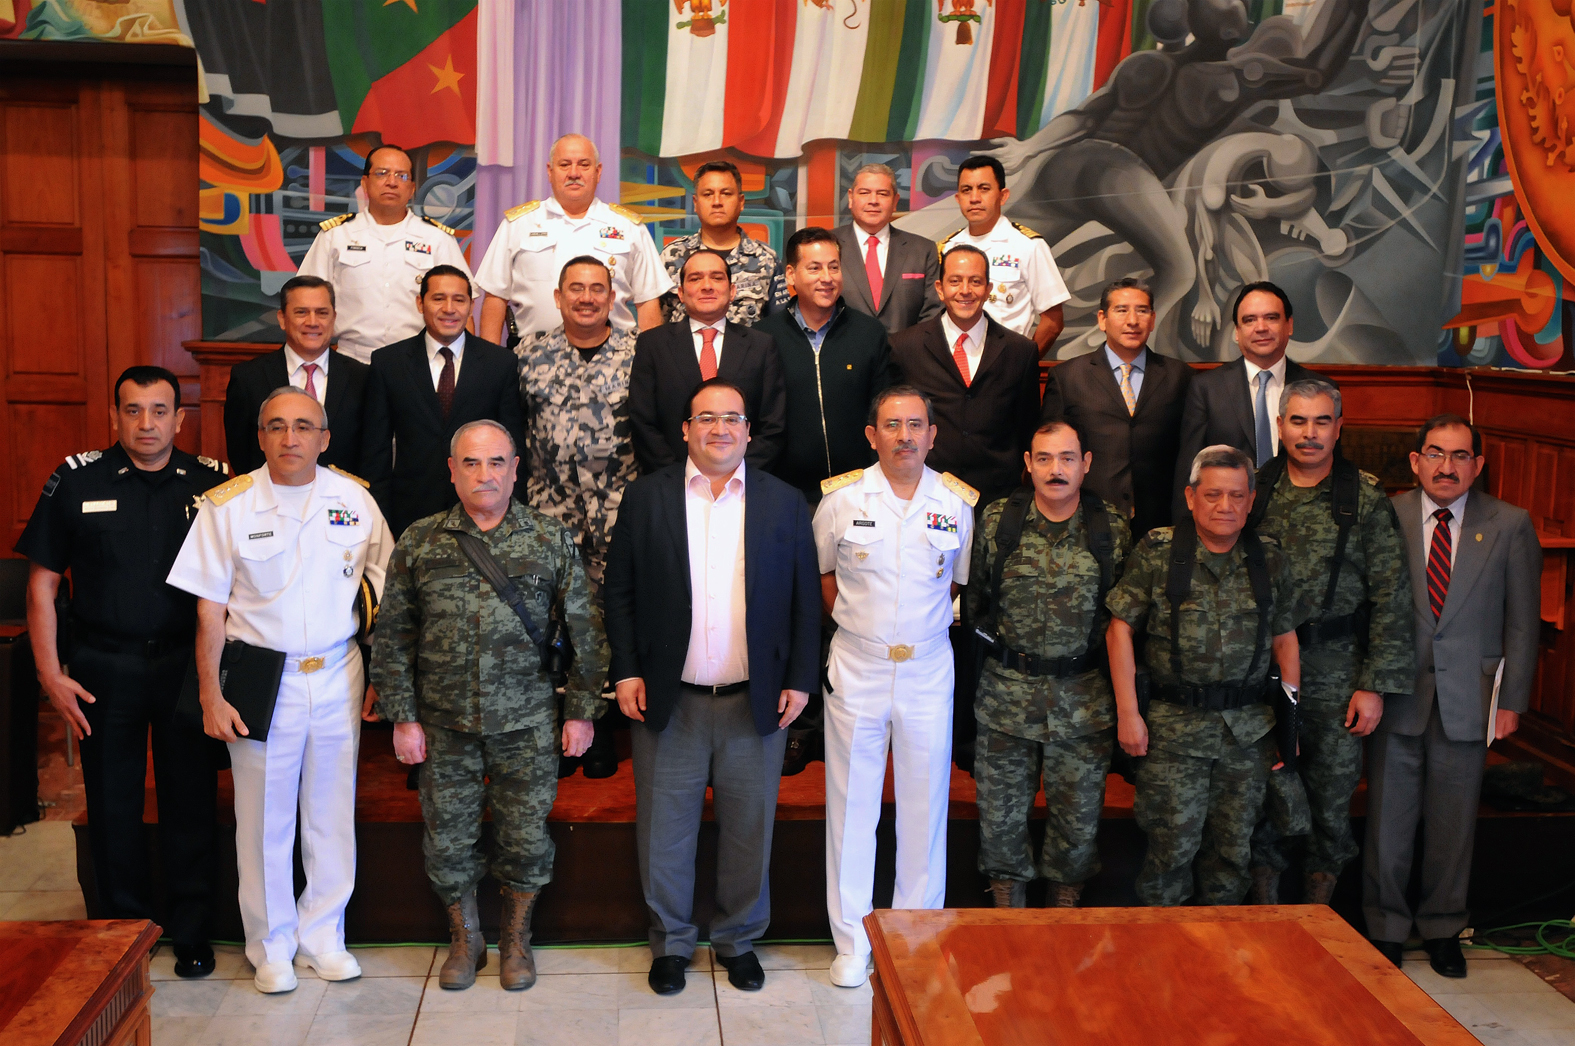 Encabeza Javier Duarte reunión del Grupo Coordinación Veracruz